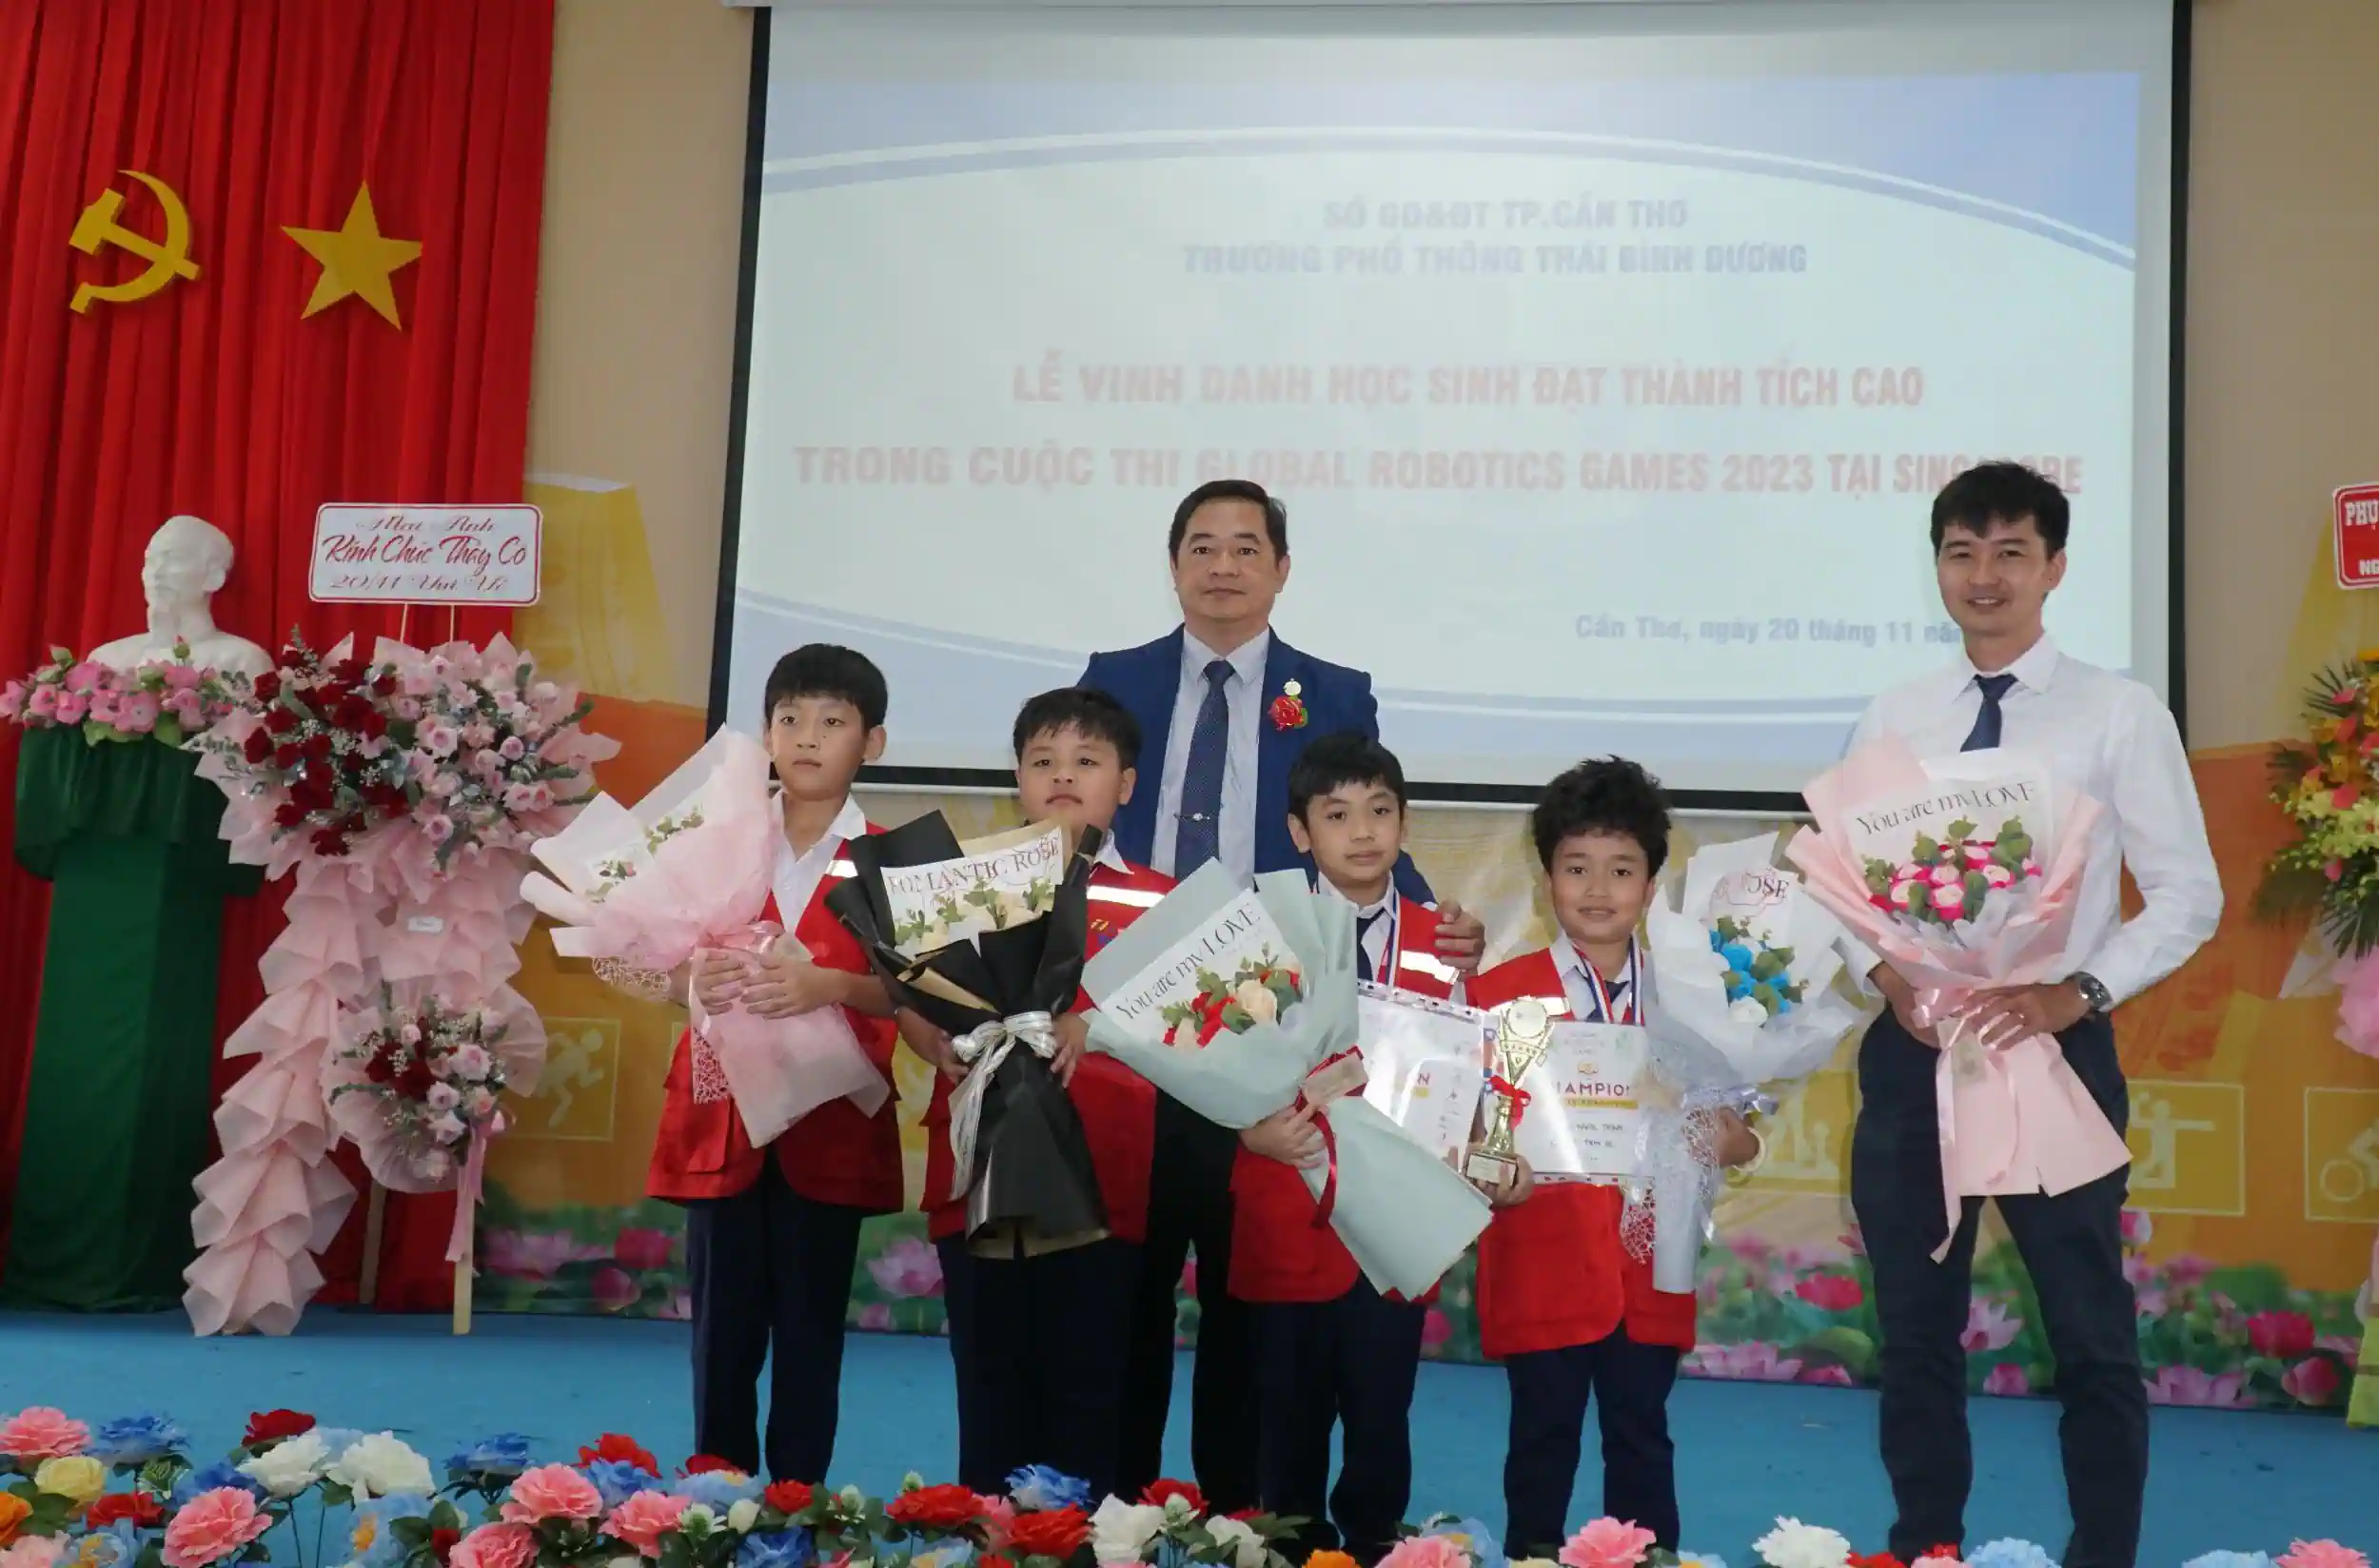 Ông Nguyễn Thanh Thống (phải), Giám đốc Trường Phổ thông Thái Bình Dương, khen thưởng các học sinh đạt thành tích cao trong Cuộc thi Global Robotics Games 2023 tại Singapore. Ảnh: B.NG